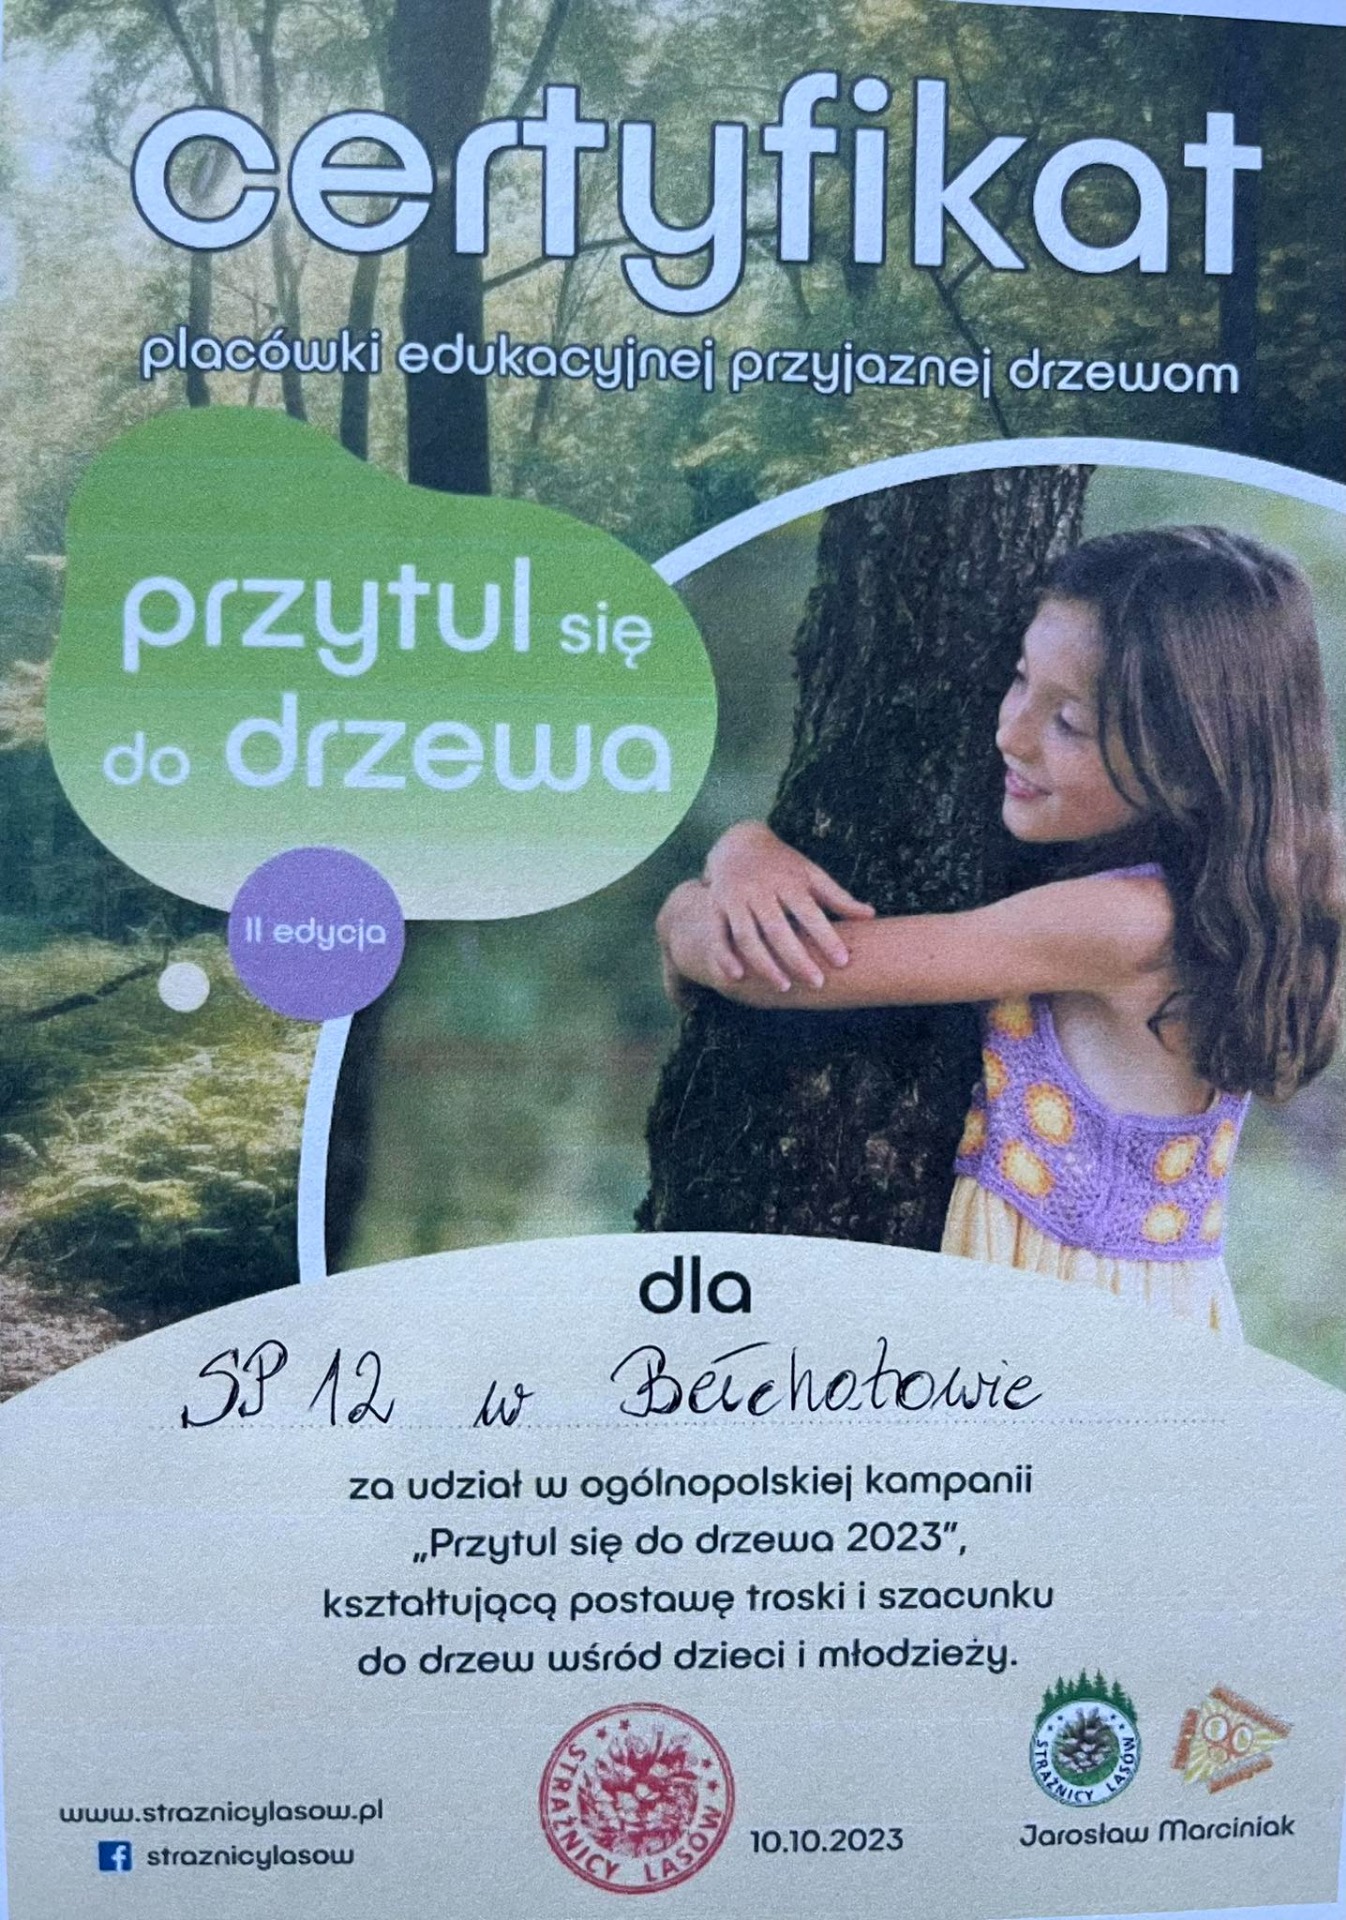 Certyfikat ogólnopolskiej kampanii "Przytul się do drzewa 2023" dla SP12 - Obrazek 1